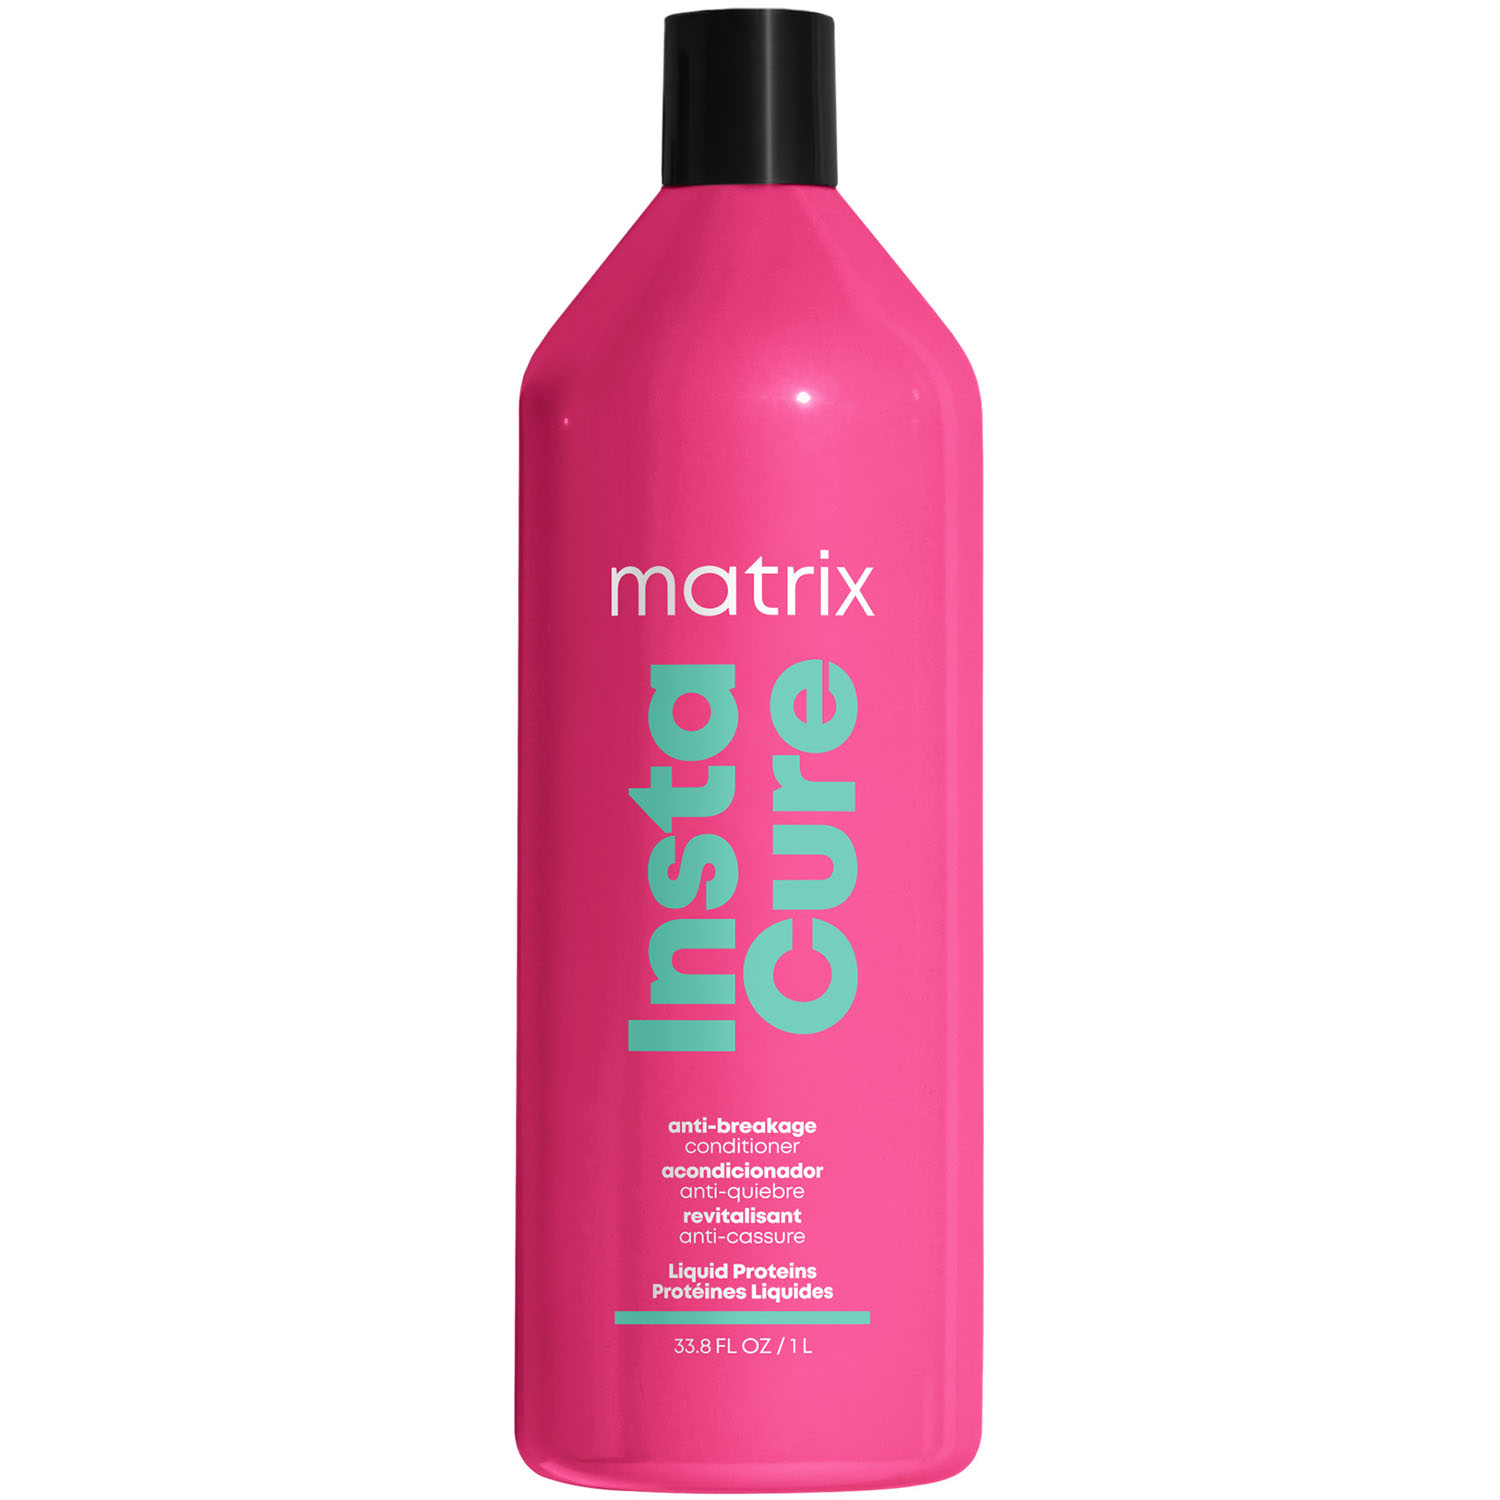 Matrix Профессиональный кондиционер Instacure для восстановления волос с жидким протеином, 1000 мл (Matrix, Total Results) matrix total results instacure шампунь 1000 мл и кондиционер 1000 мл для восстановления волос с жидким протеином